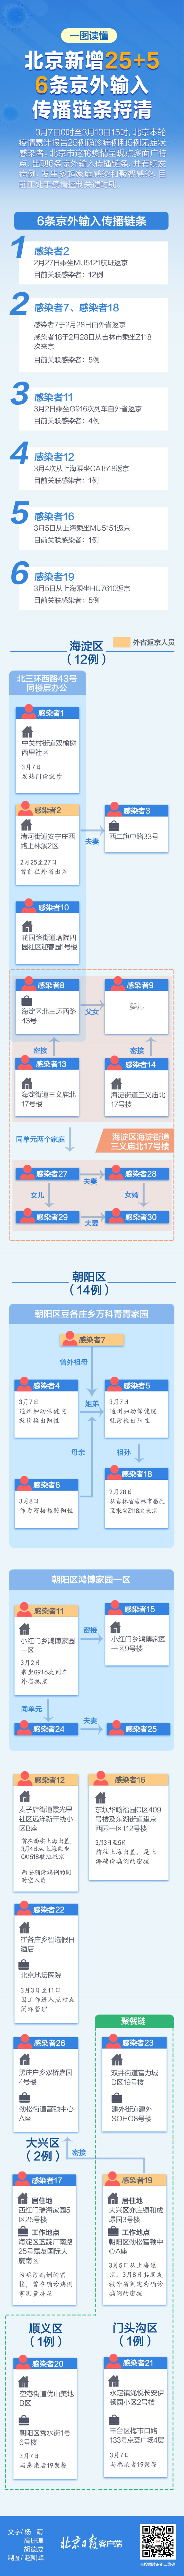 北京部分中小学通知居家学习 目前有6条京外输入传播链条